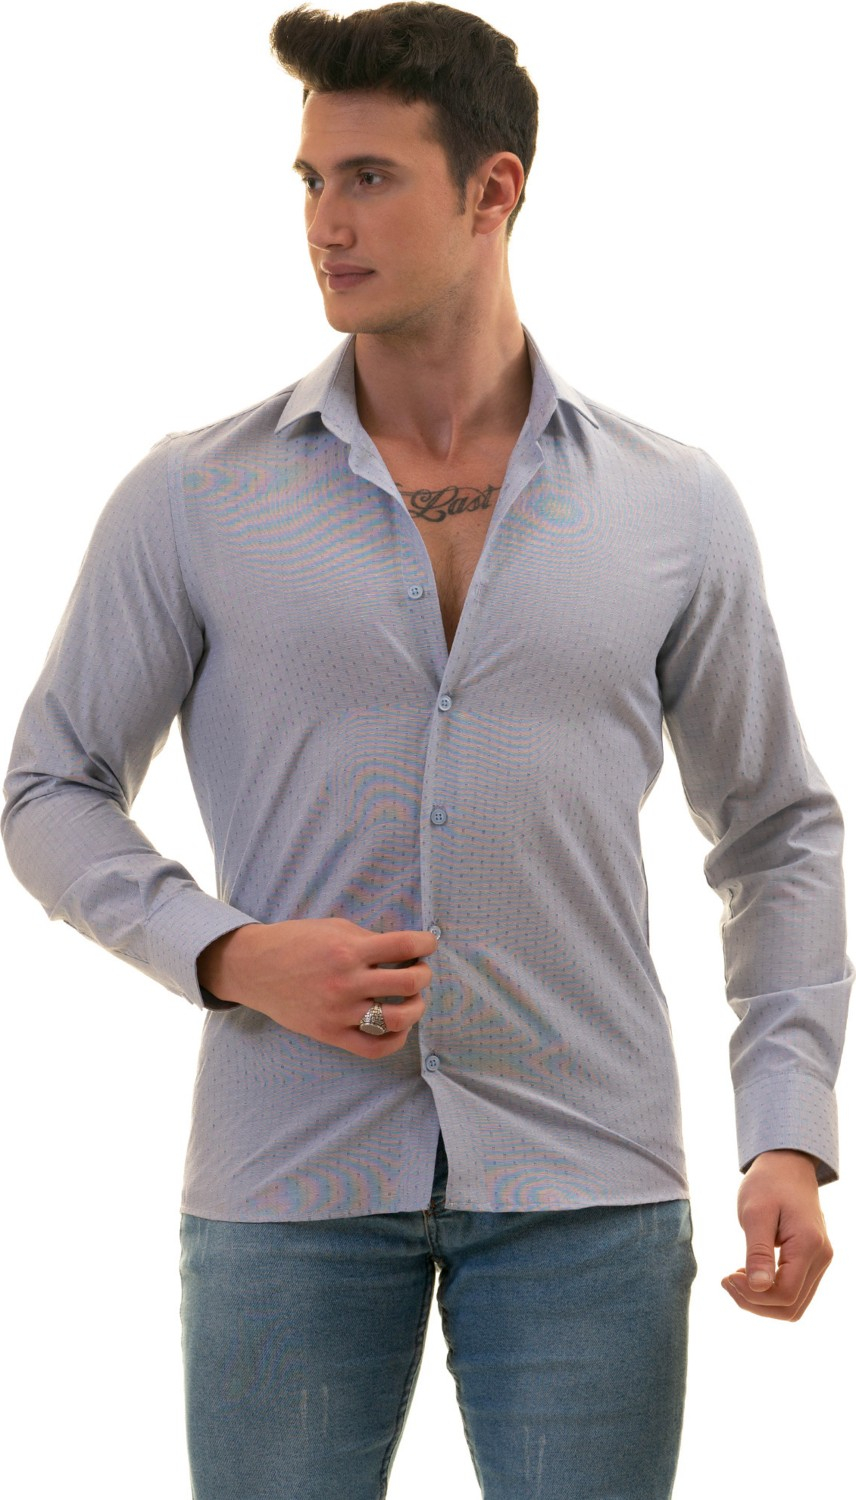 Эксклюзивная голубая рубашка с узором для стройного покроя.